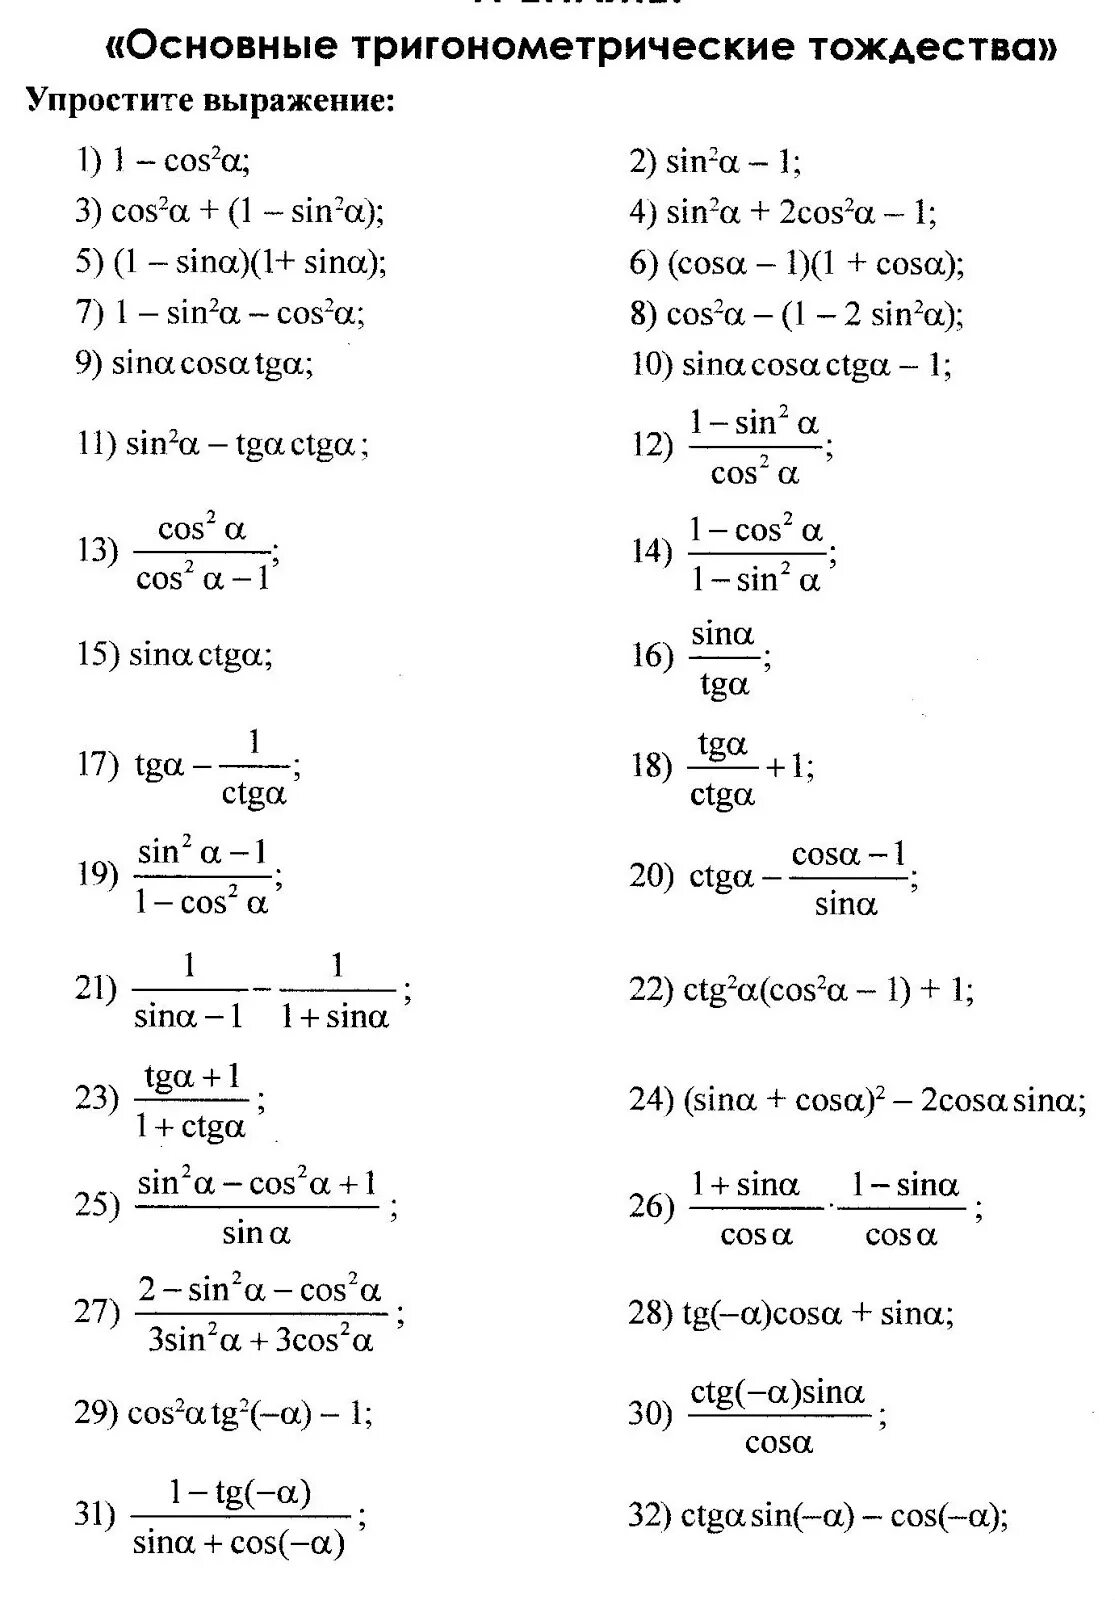 Упростить тригонометрическую функцию. Преобразование тригонометрических выражений 10 класс формулы. Основные тригонометрические тождества 10 класс формулы. Основные тригонометрические 10 класс. Упростить выражение тригонометрия 10.